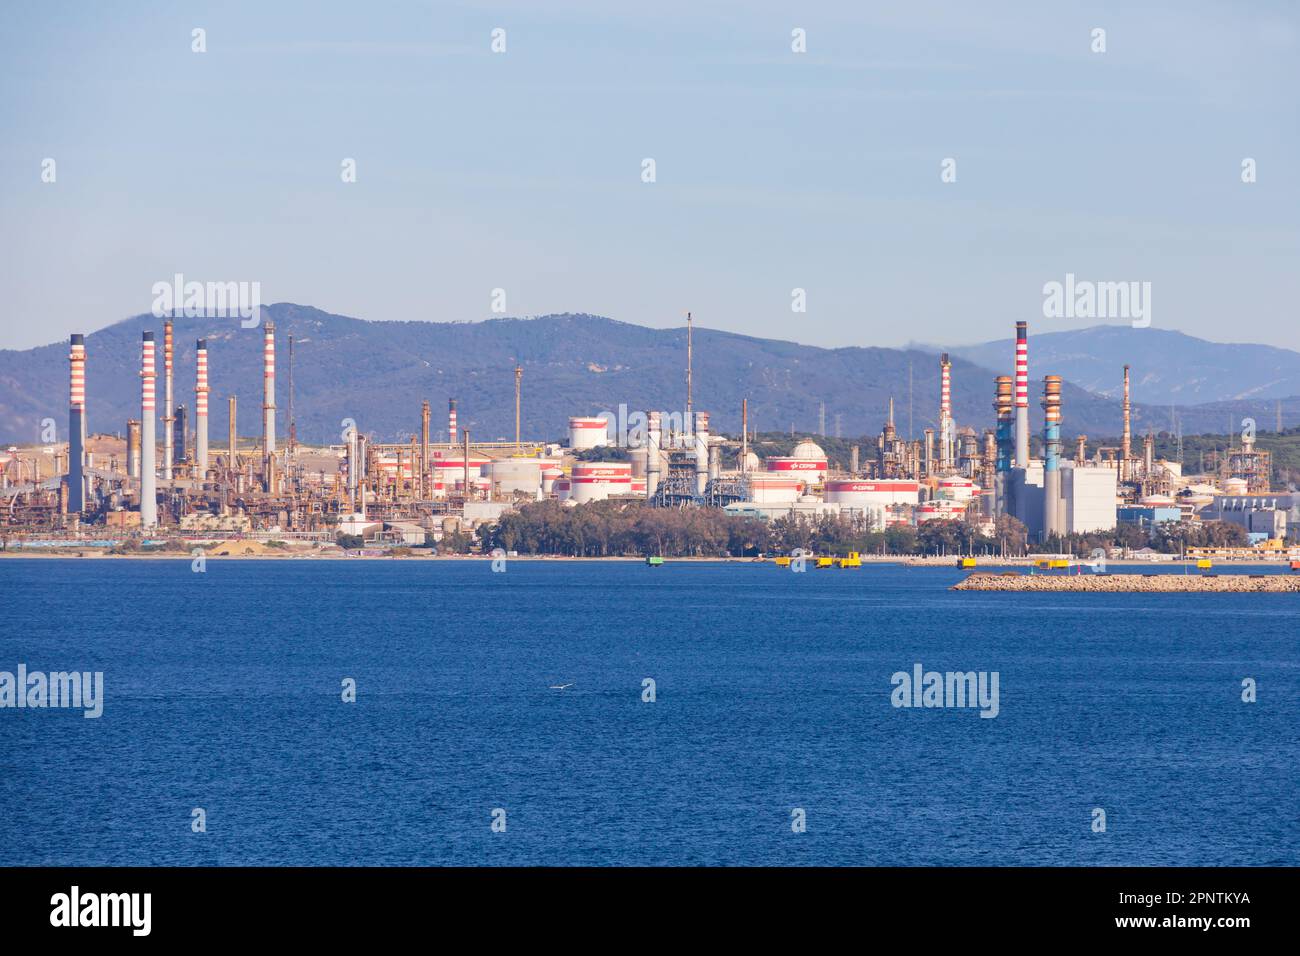 La refieria San Roque, raffinerie pétrochimique sur la baie d'Algeciras, Espagne. Vu du territoire britannique d'outre-mer de Gibraltar, le Rocher de Gibr Banque D'Images